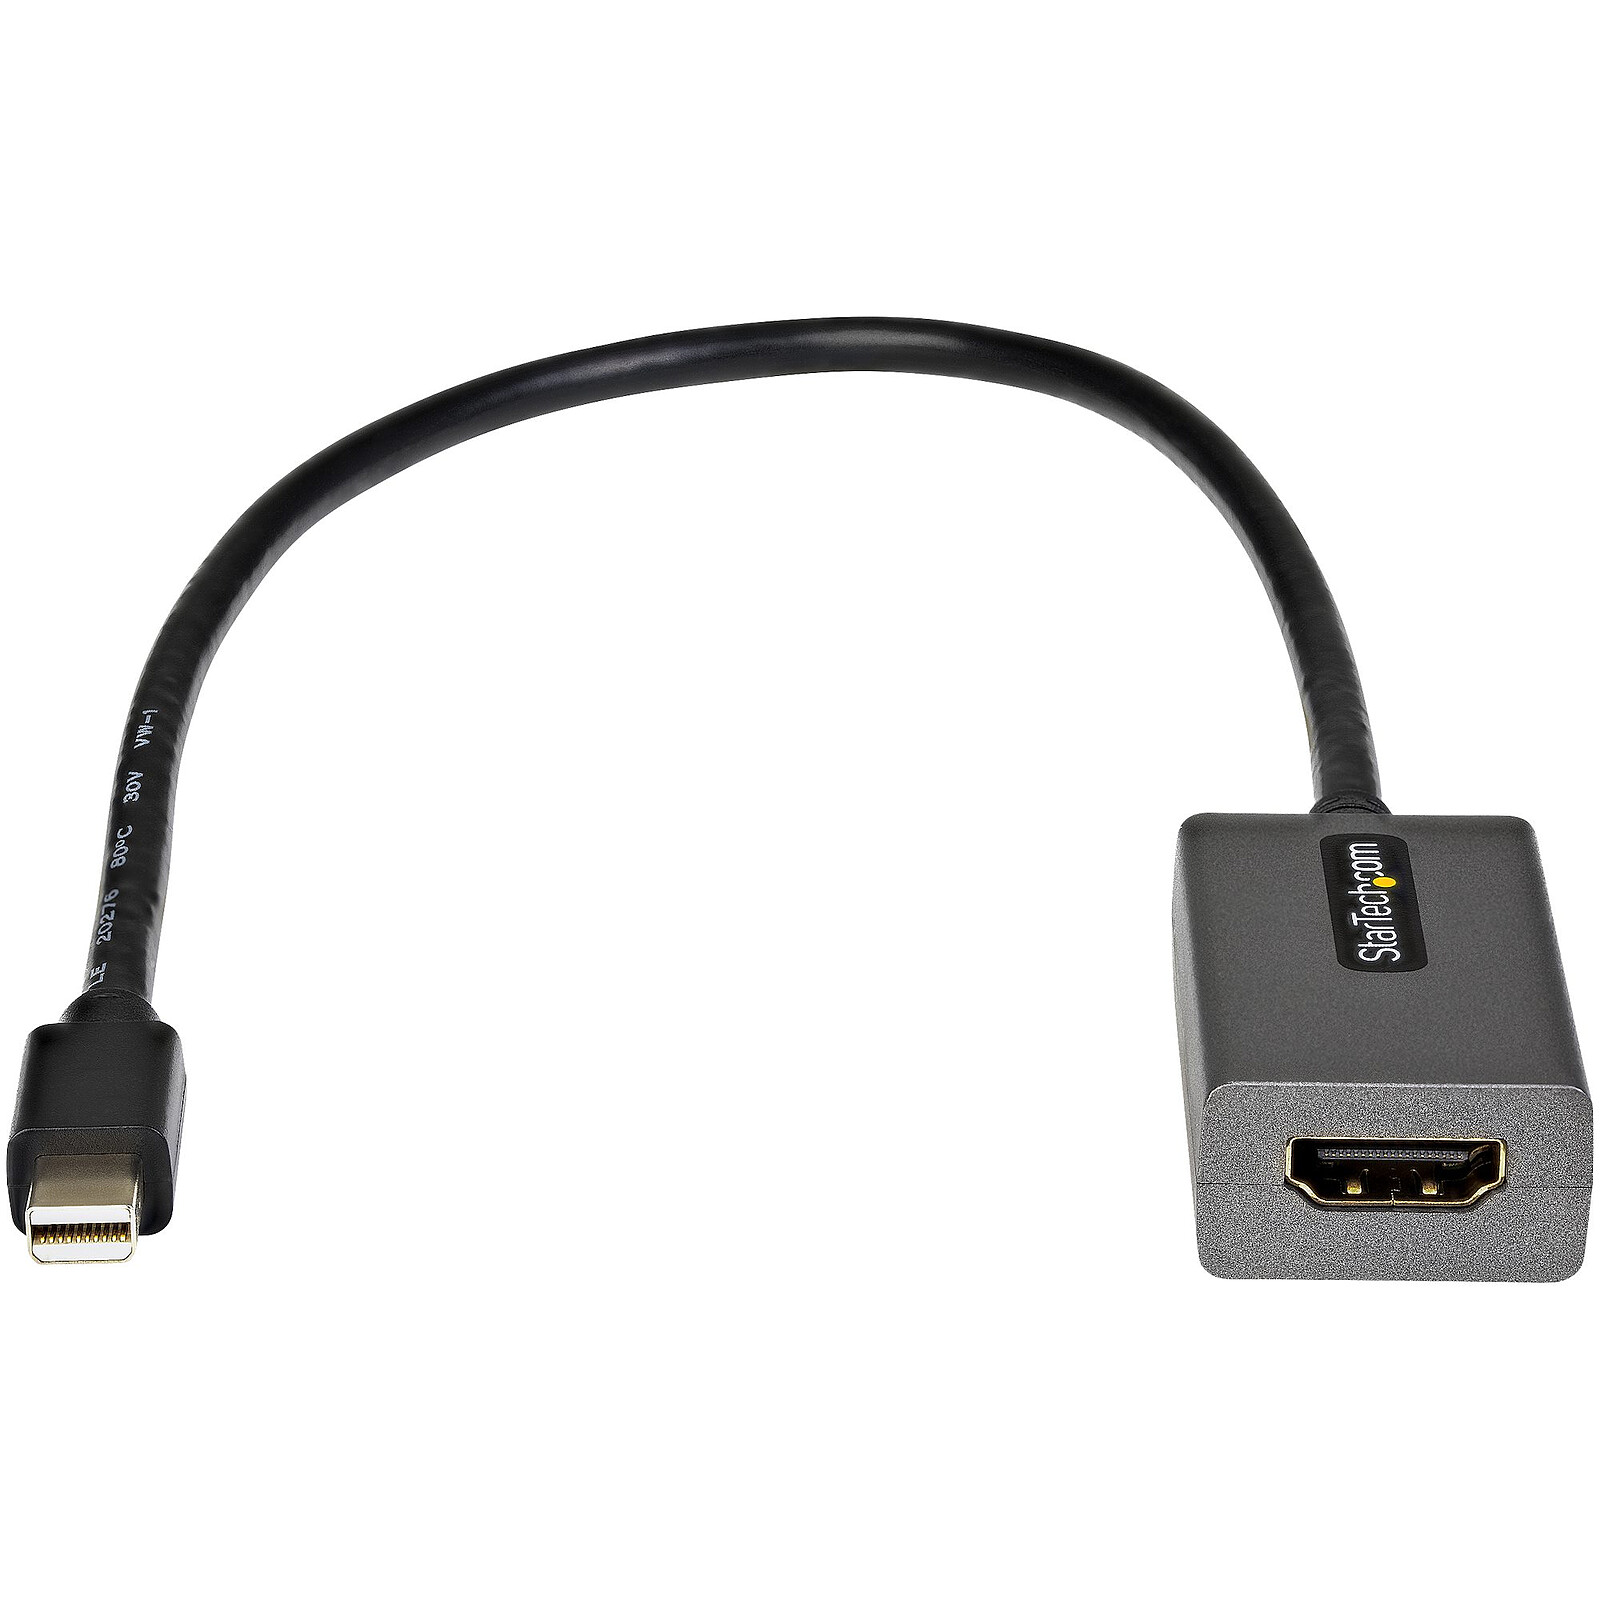 Adaptateur de Mini Display Port (DP) vers HDMI femelle pour